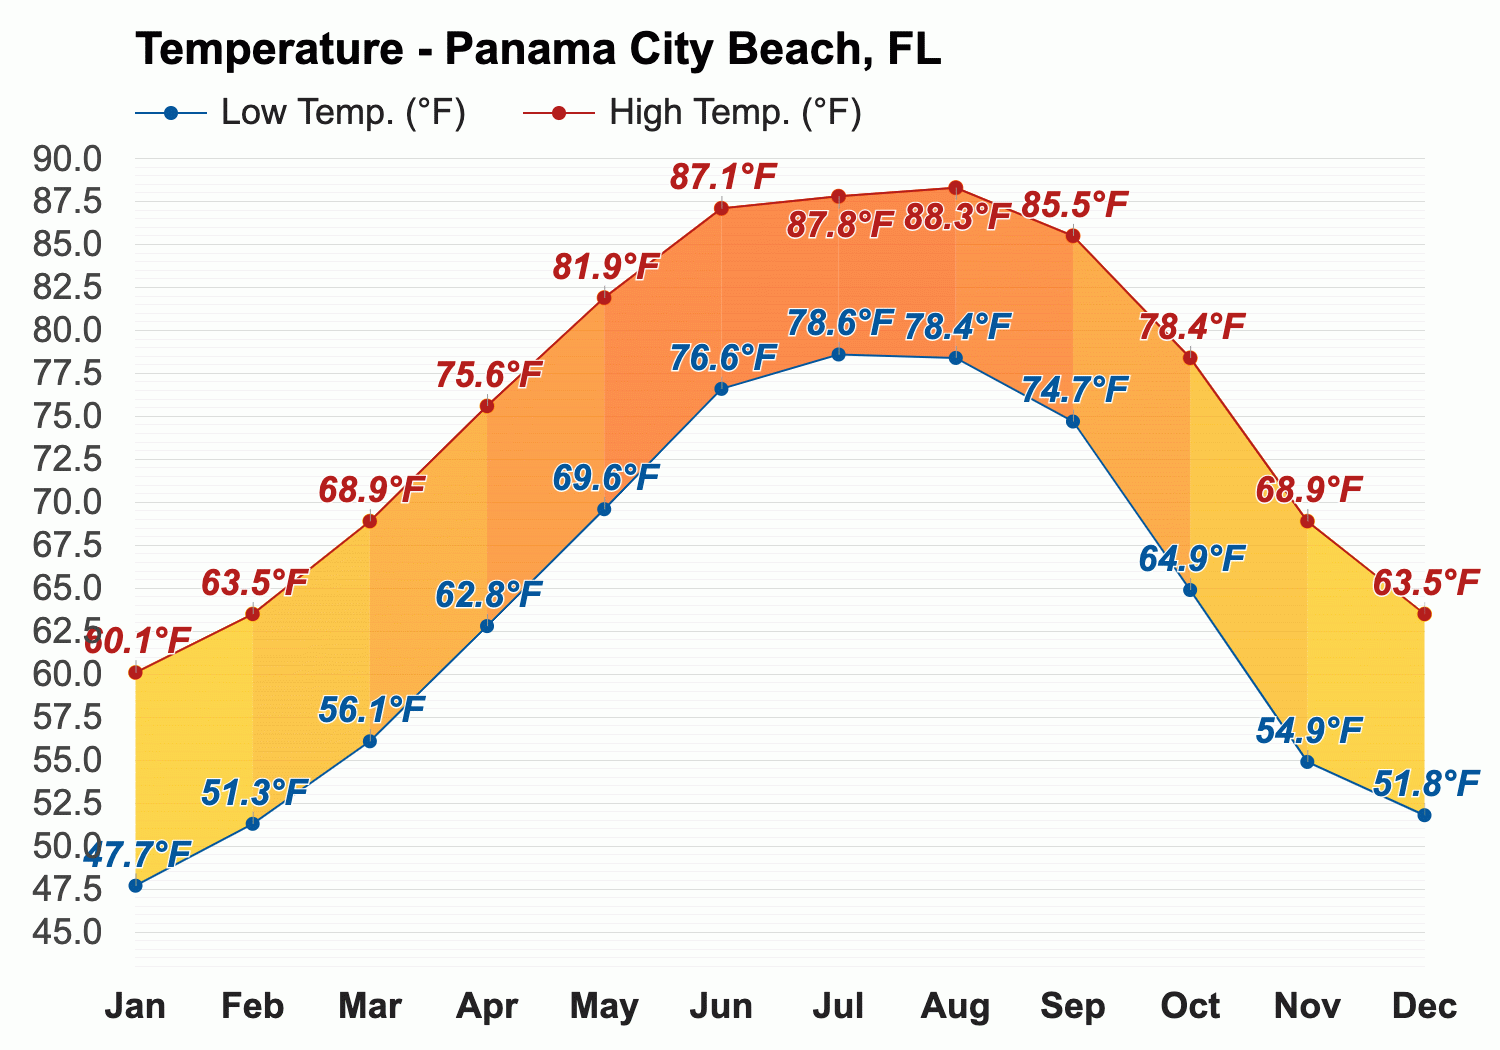 Cât de cald este Panama City Beach în aprilie?